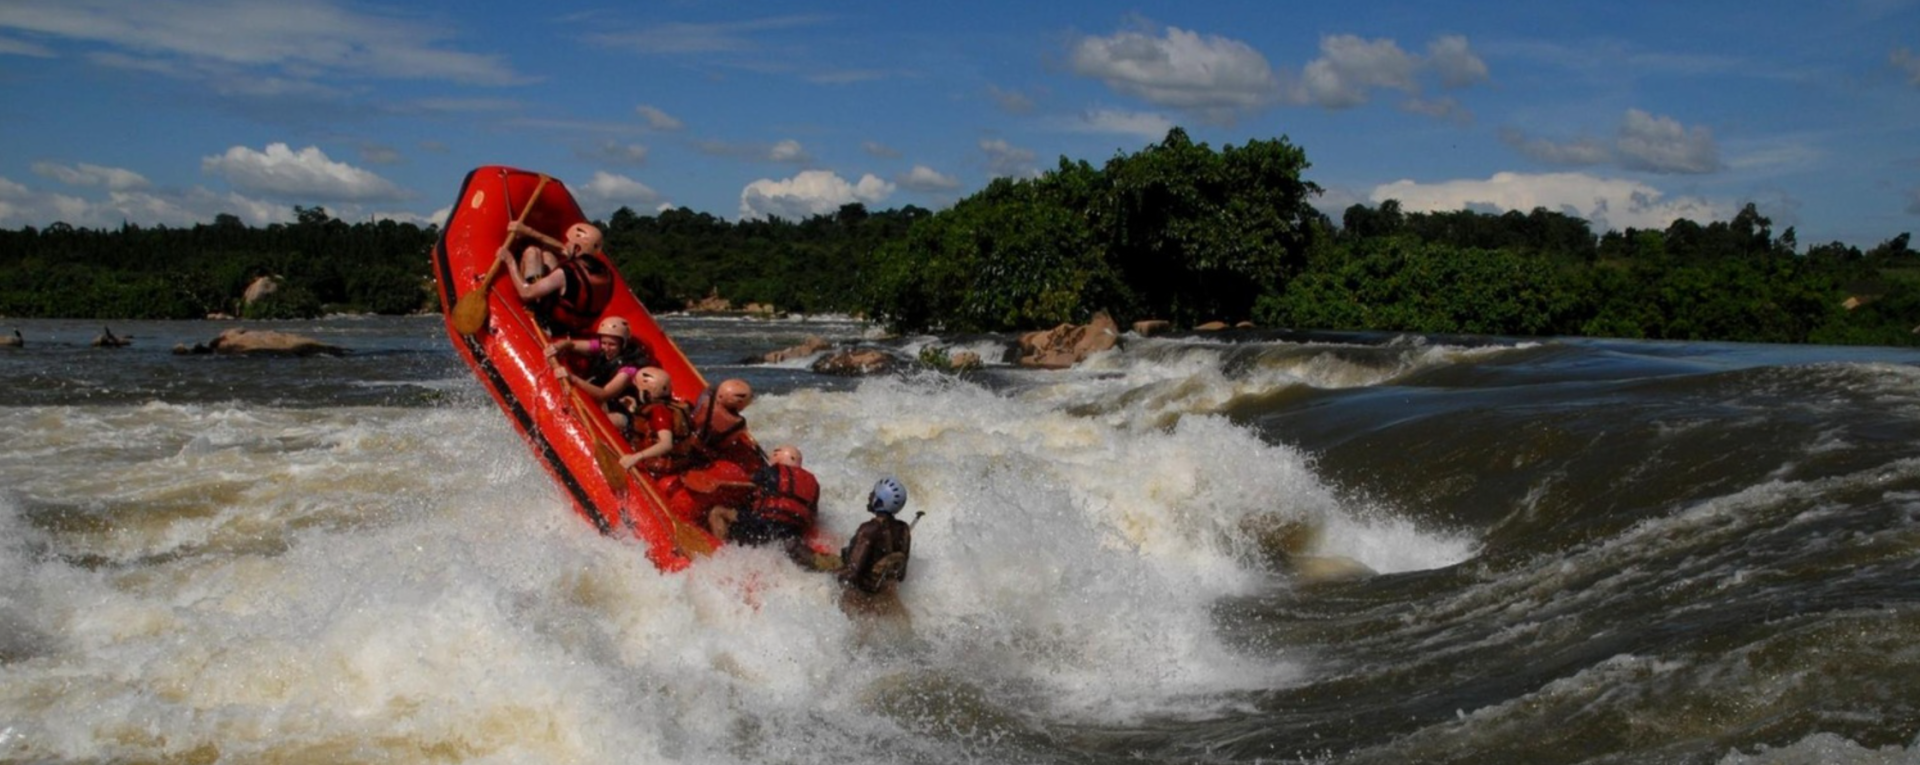 Rafting in the rapids on the river Nile in Jinja Uganda.